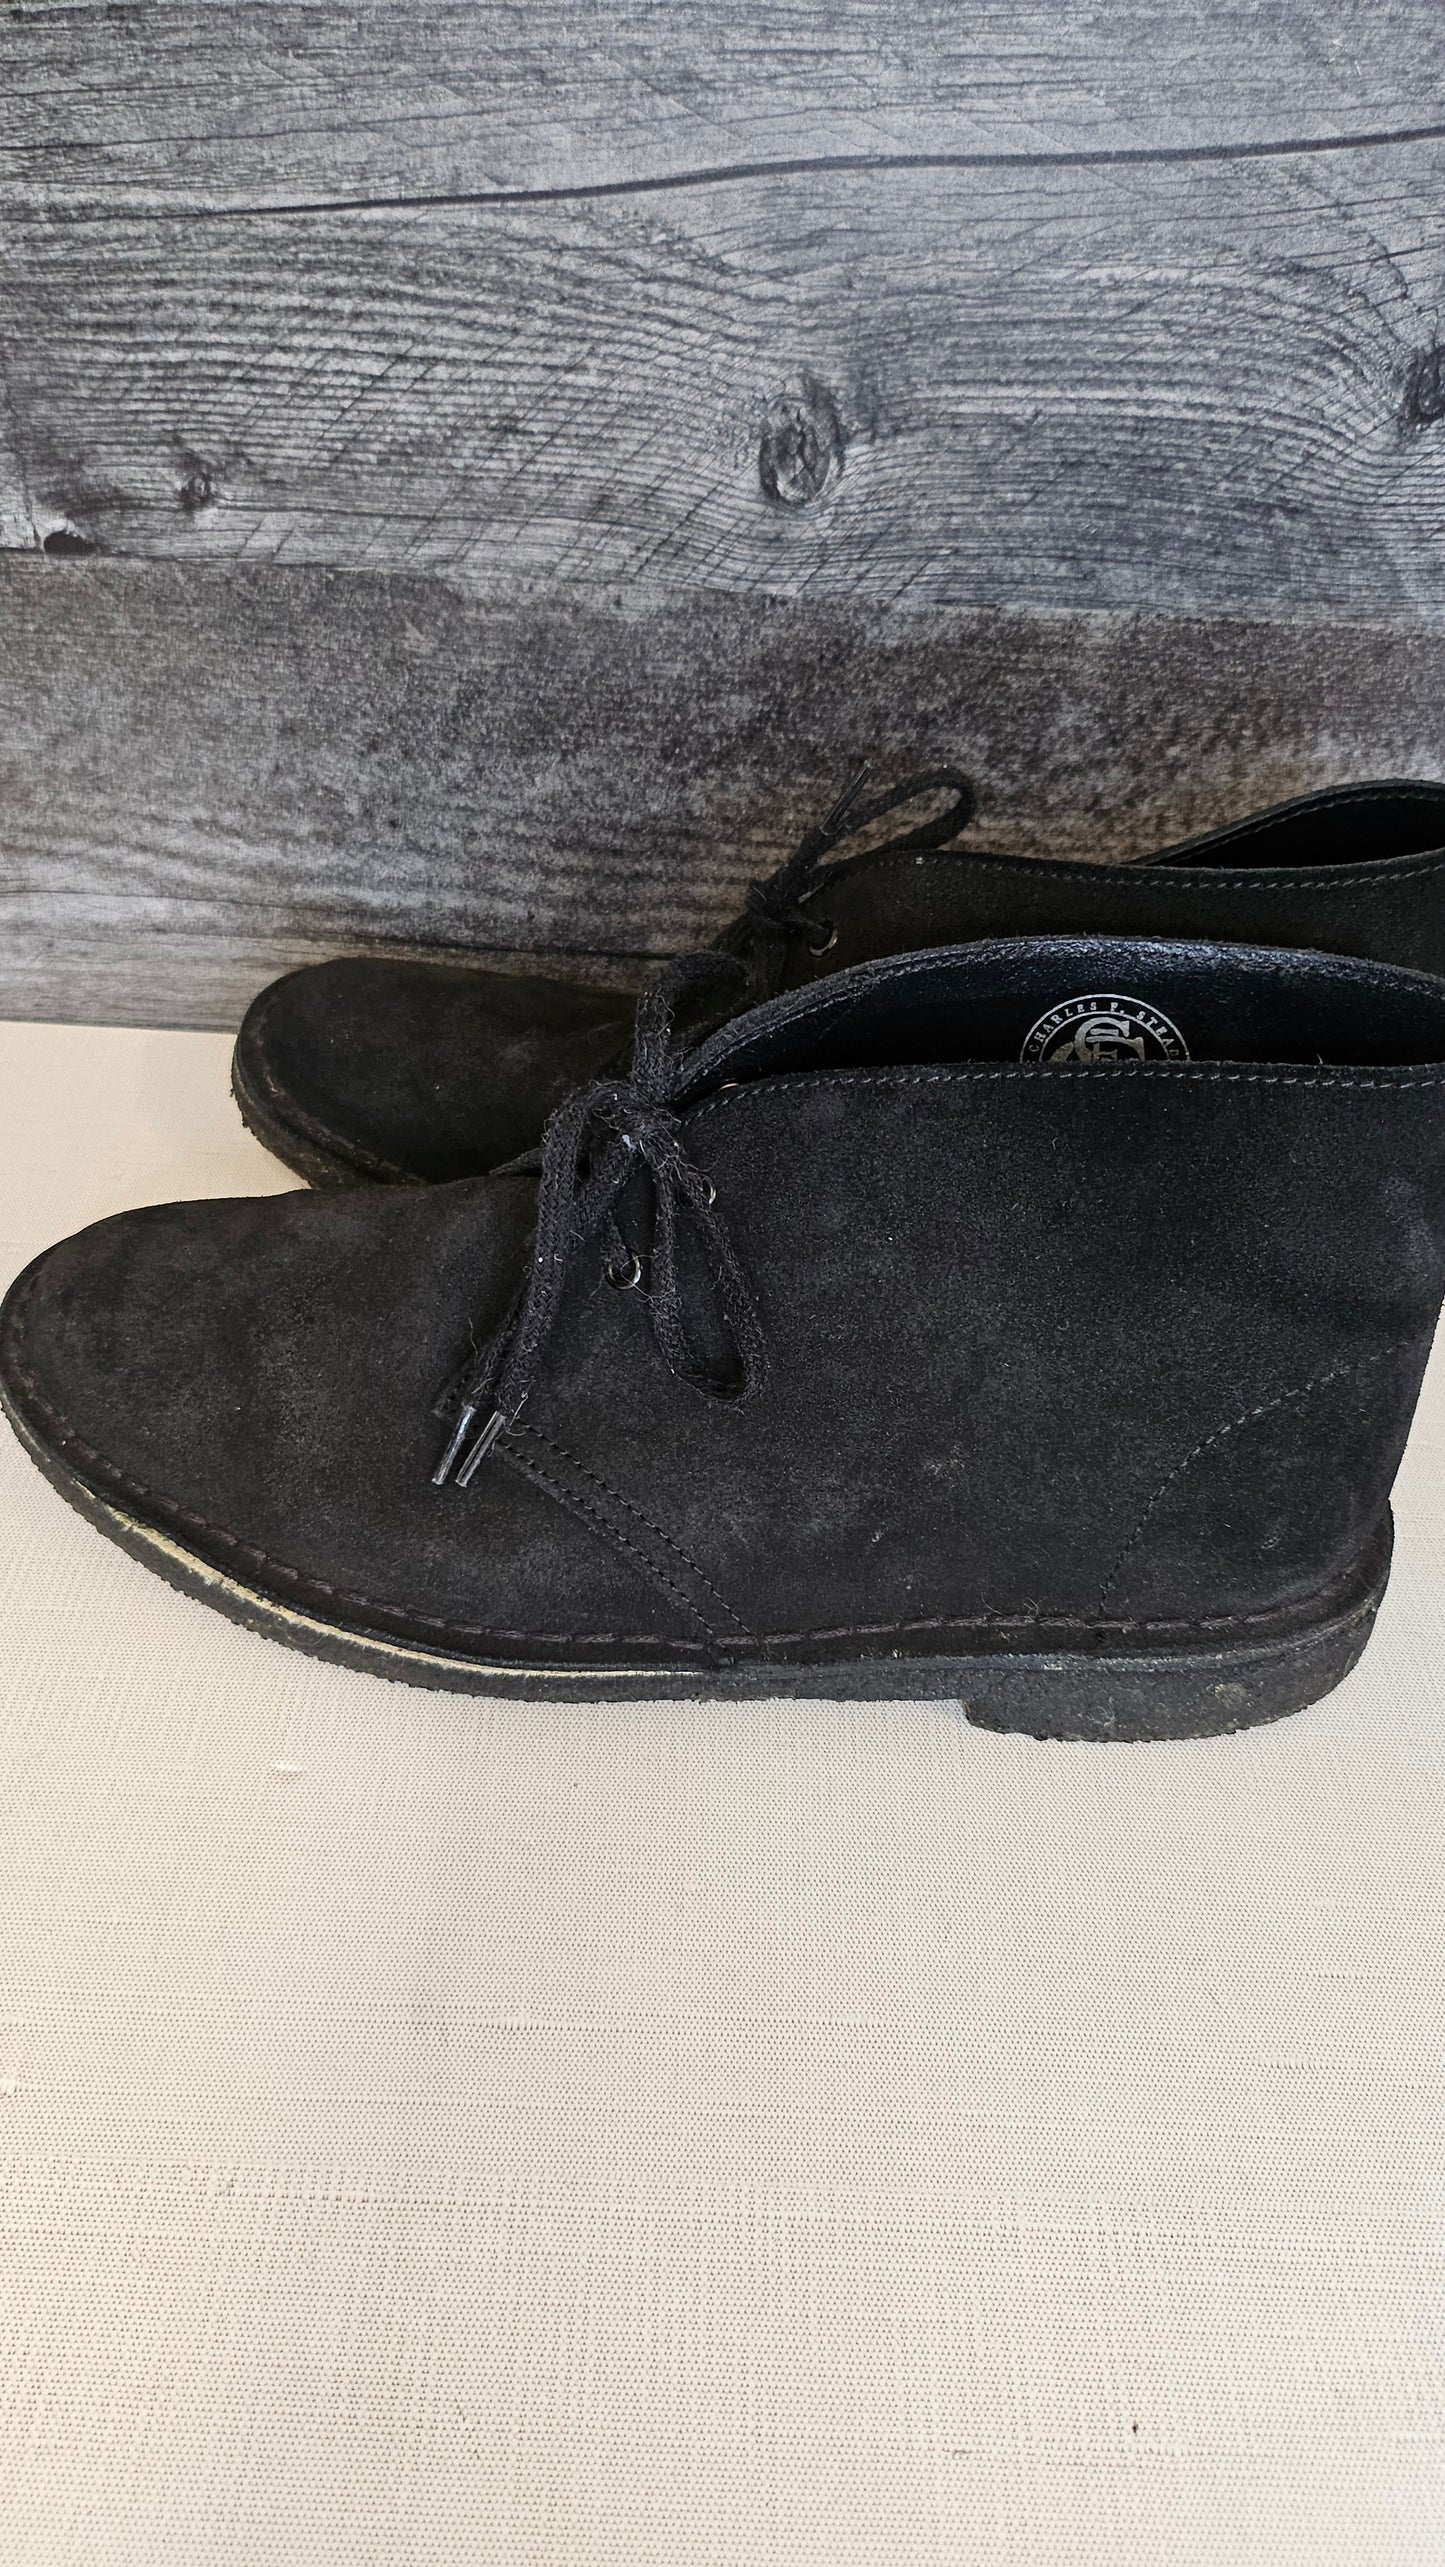 Clarks Black Desert Boots (41.5)